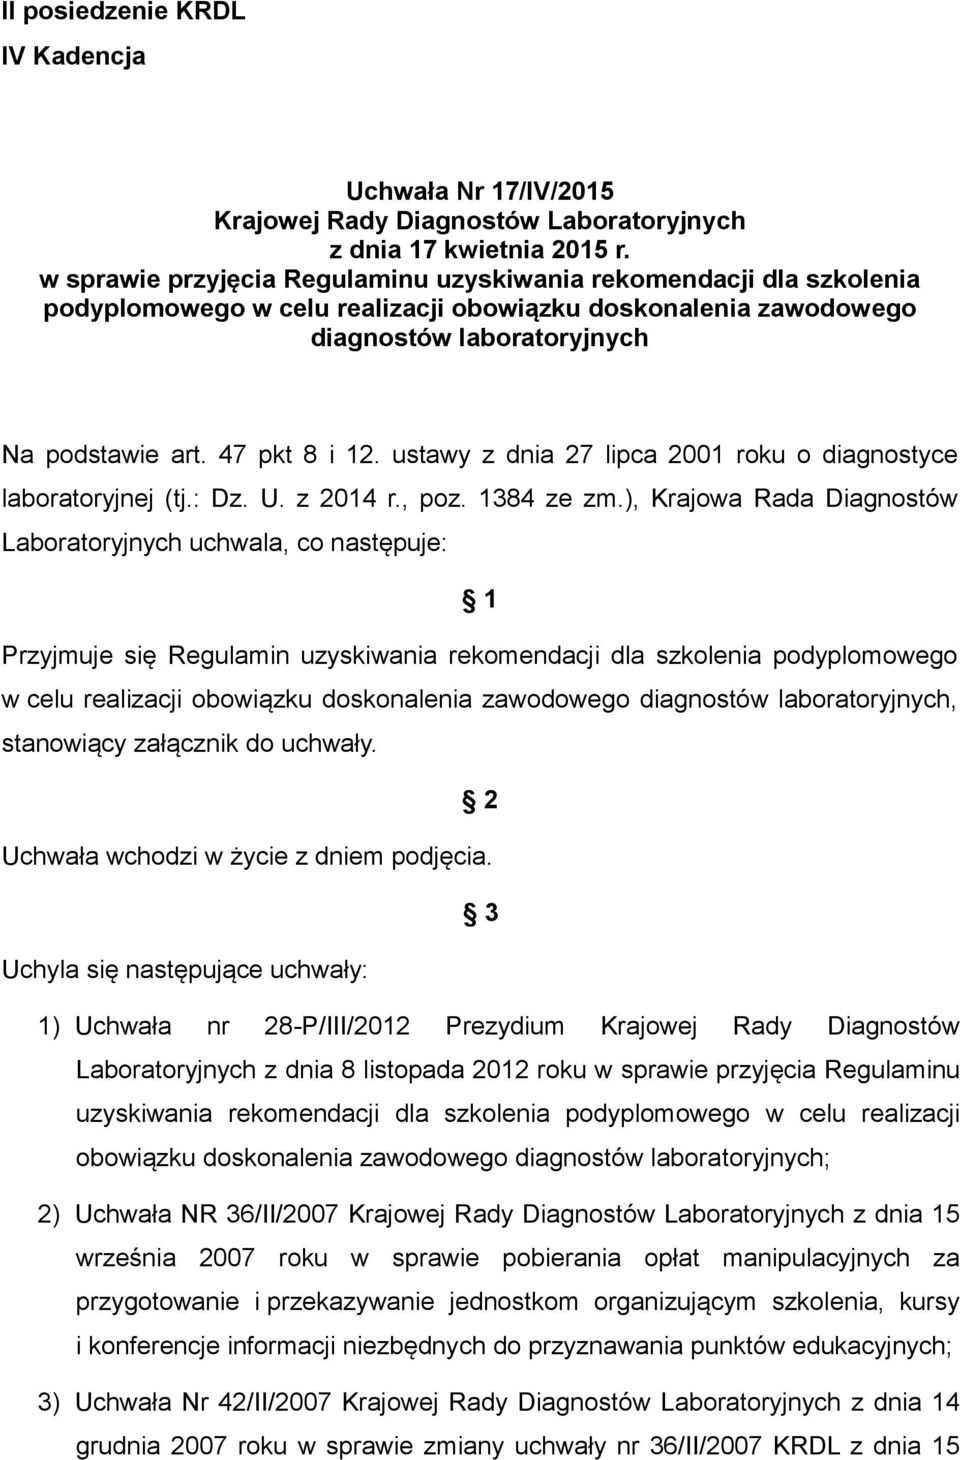 ustawy z dnia 27 lipca 2001 roku o diagnostyce laboratoryjnej (tj.: Dz. U. z 2014 r., poz. 1384 ze zm.